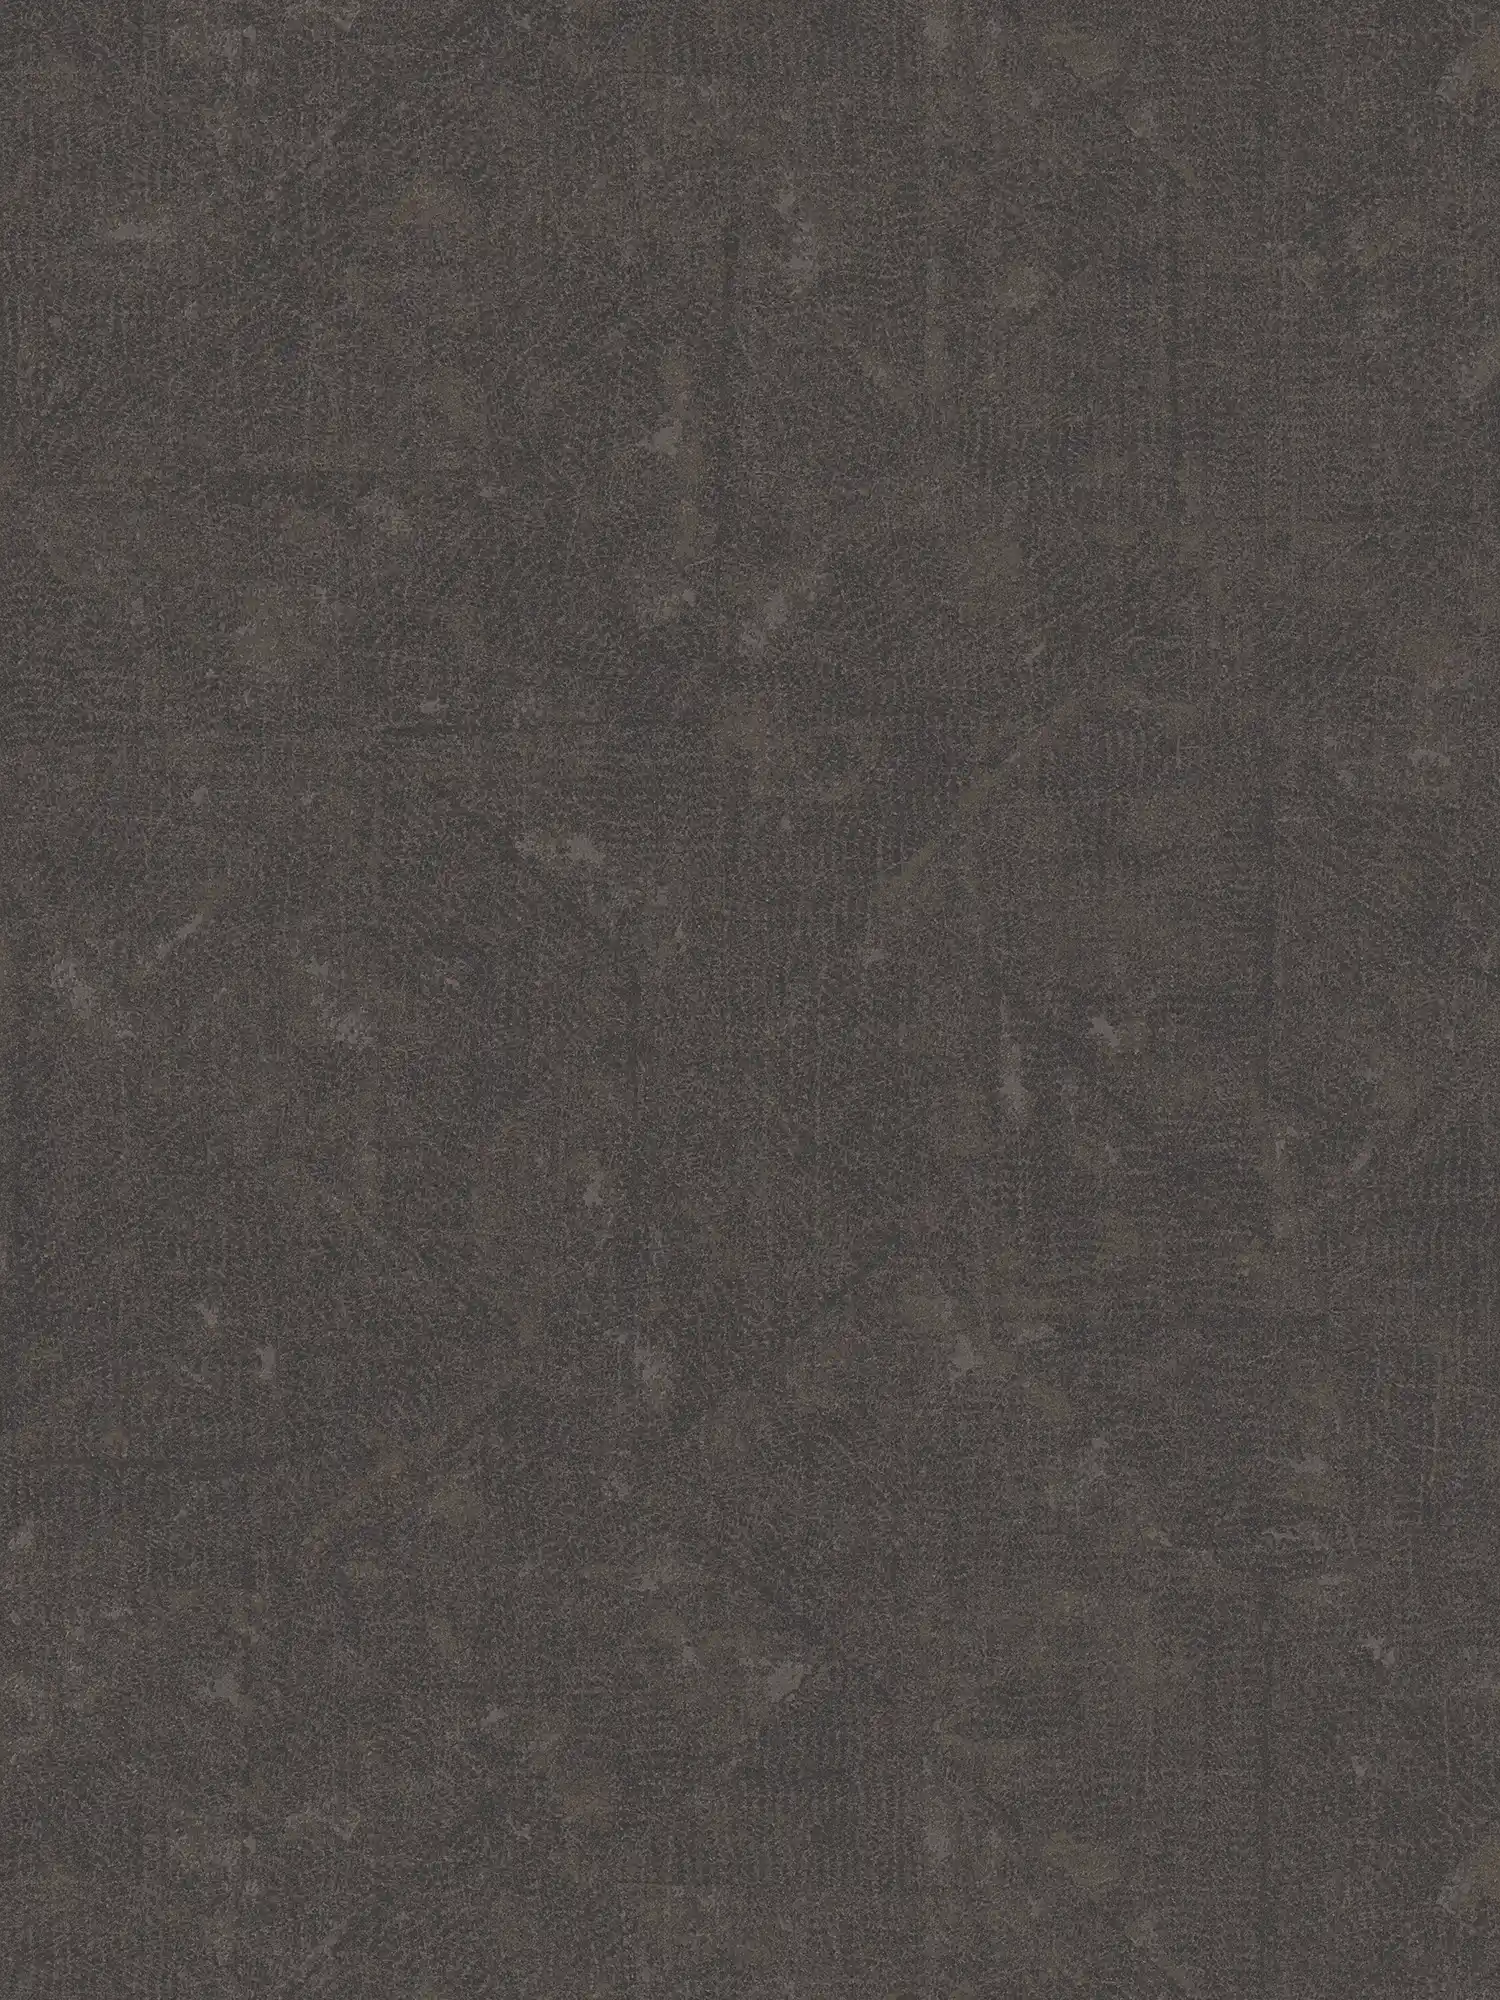 Carta da parati in tessuto non tessuto marrone scuro a motivi sottili - marrone, nero, bronzo
